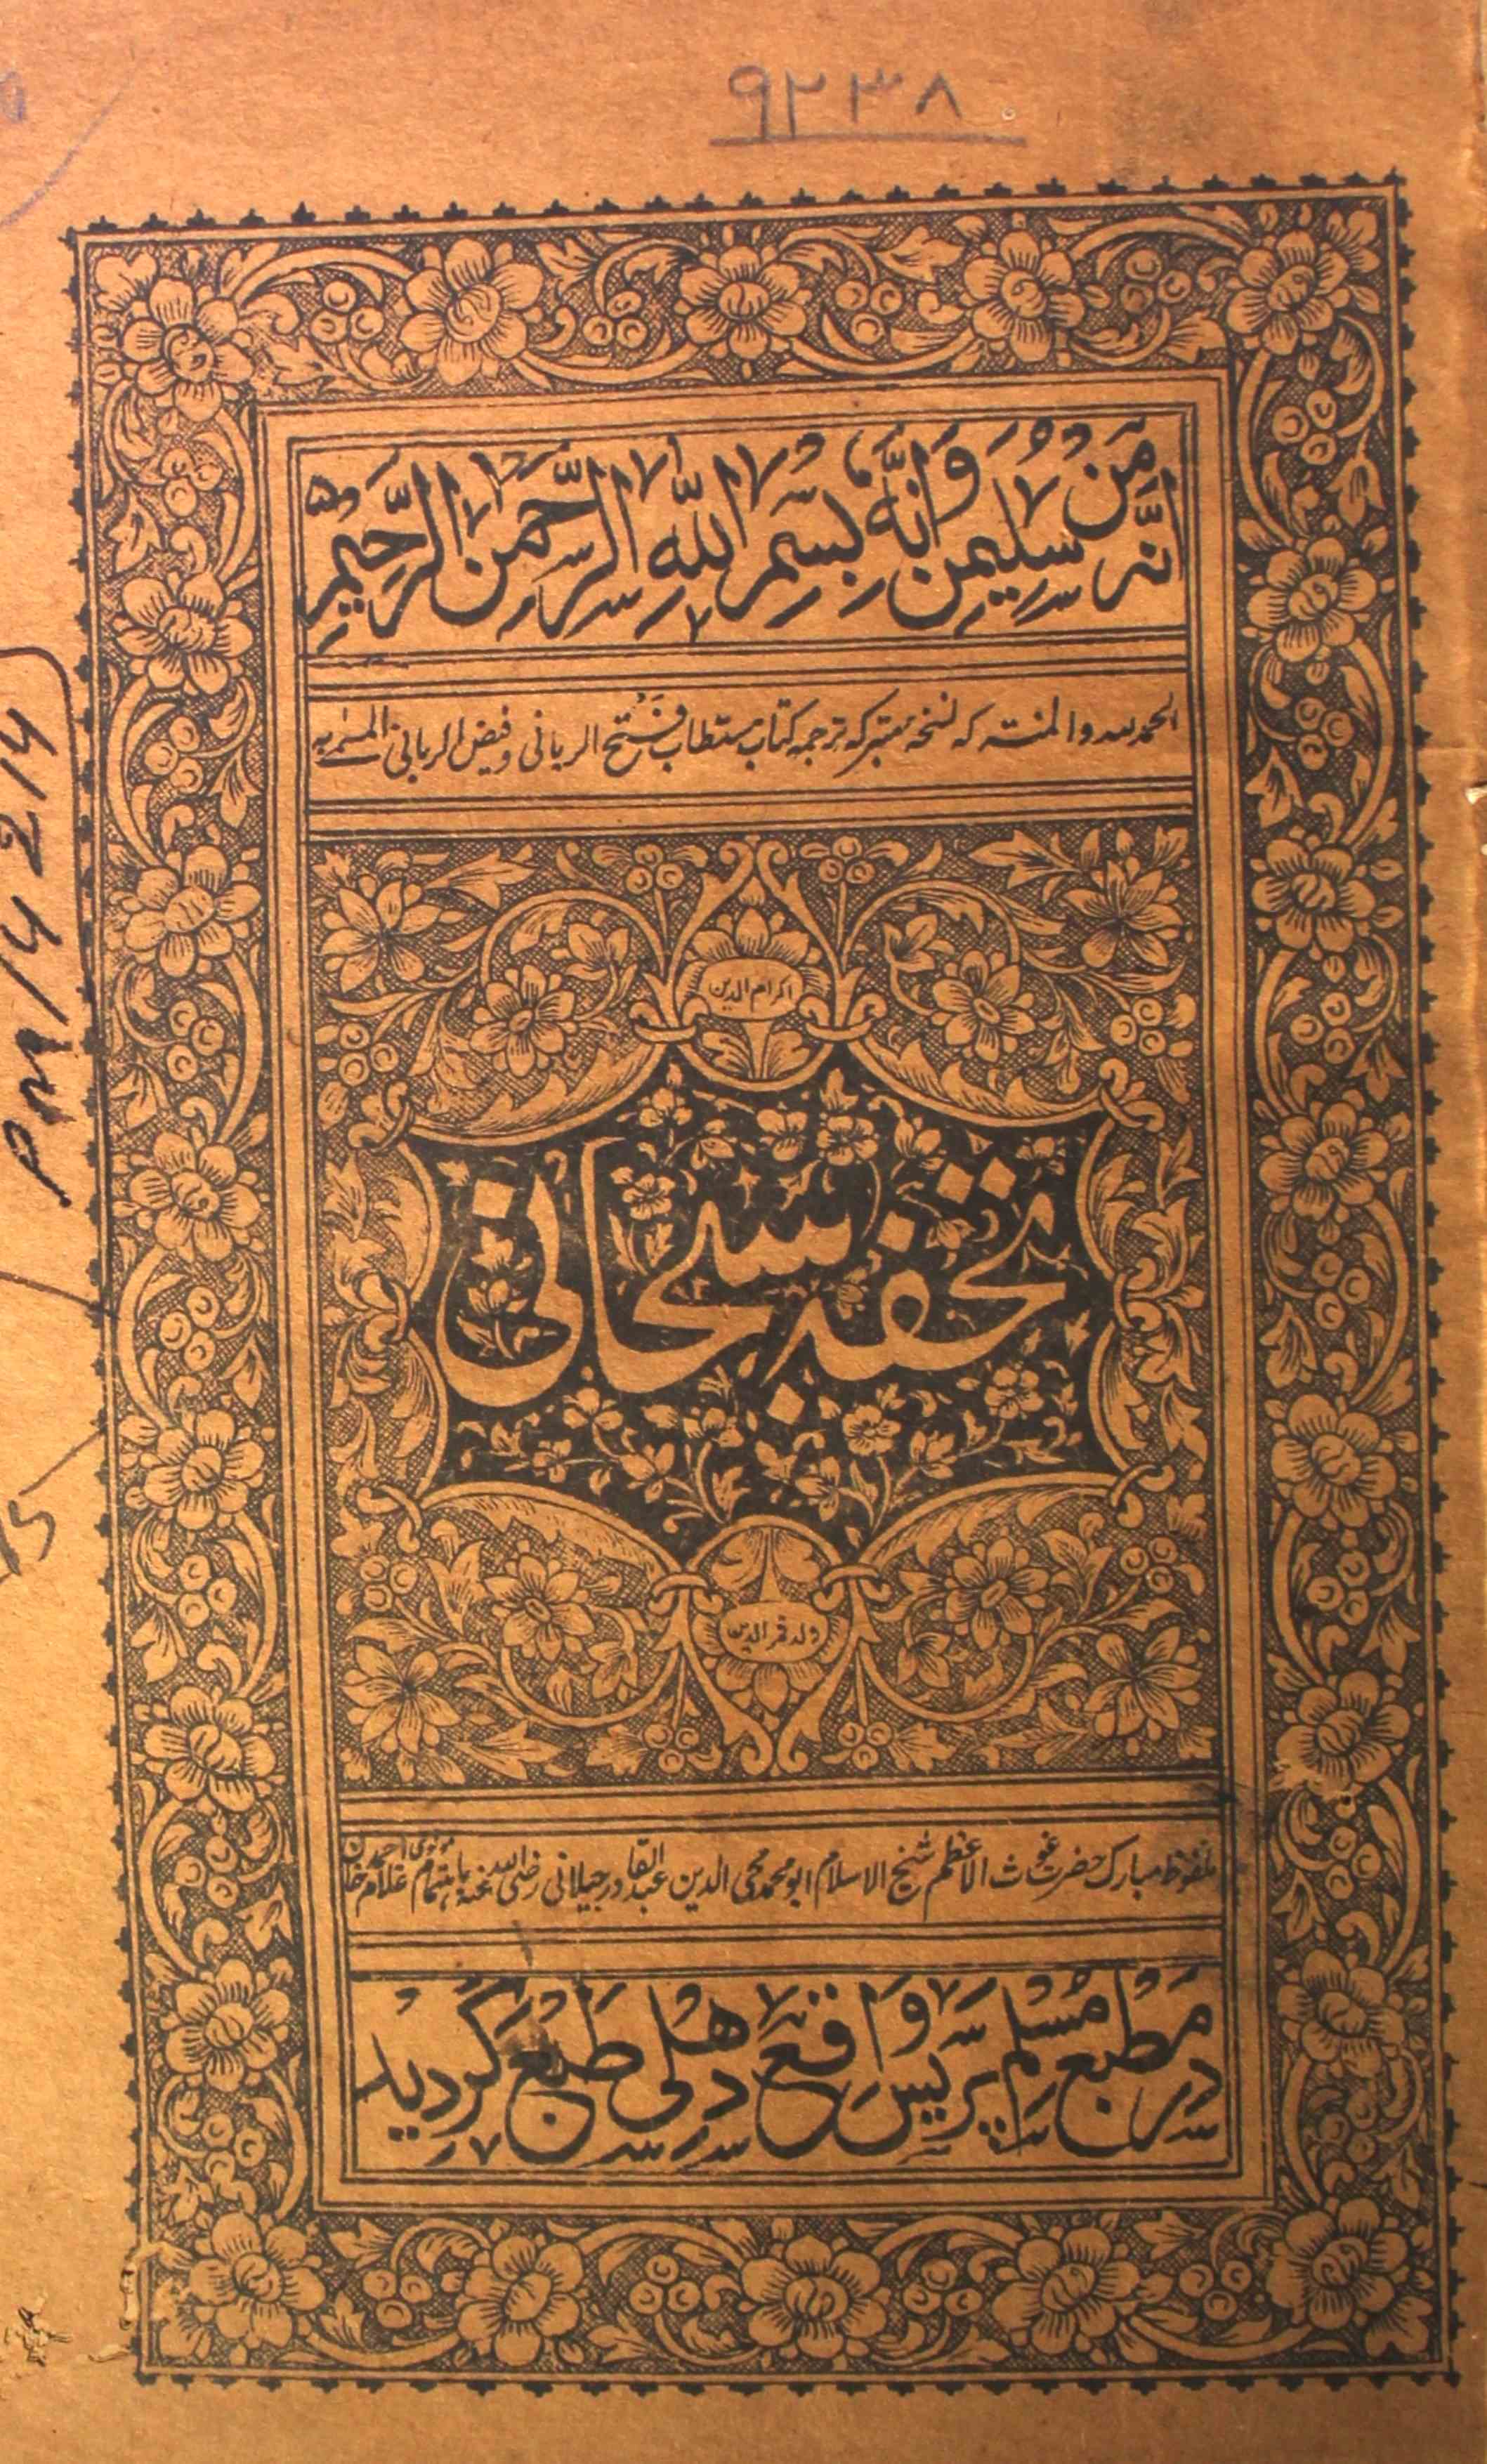 Tohfa-e-Subhani